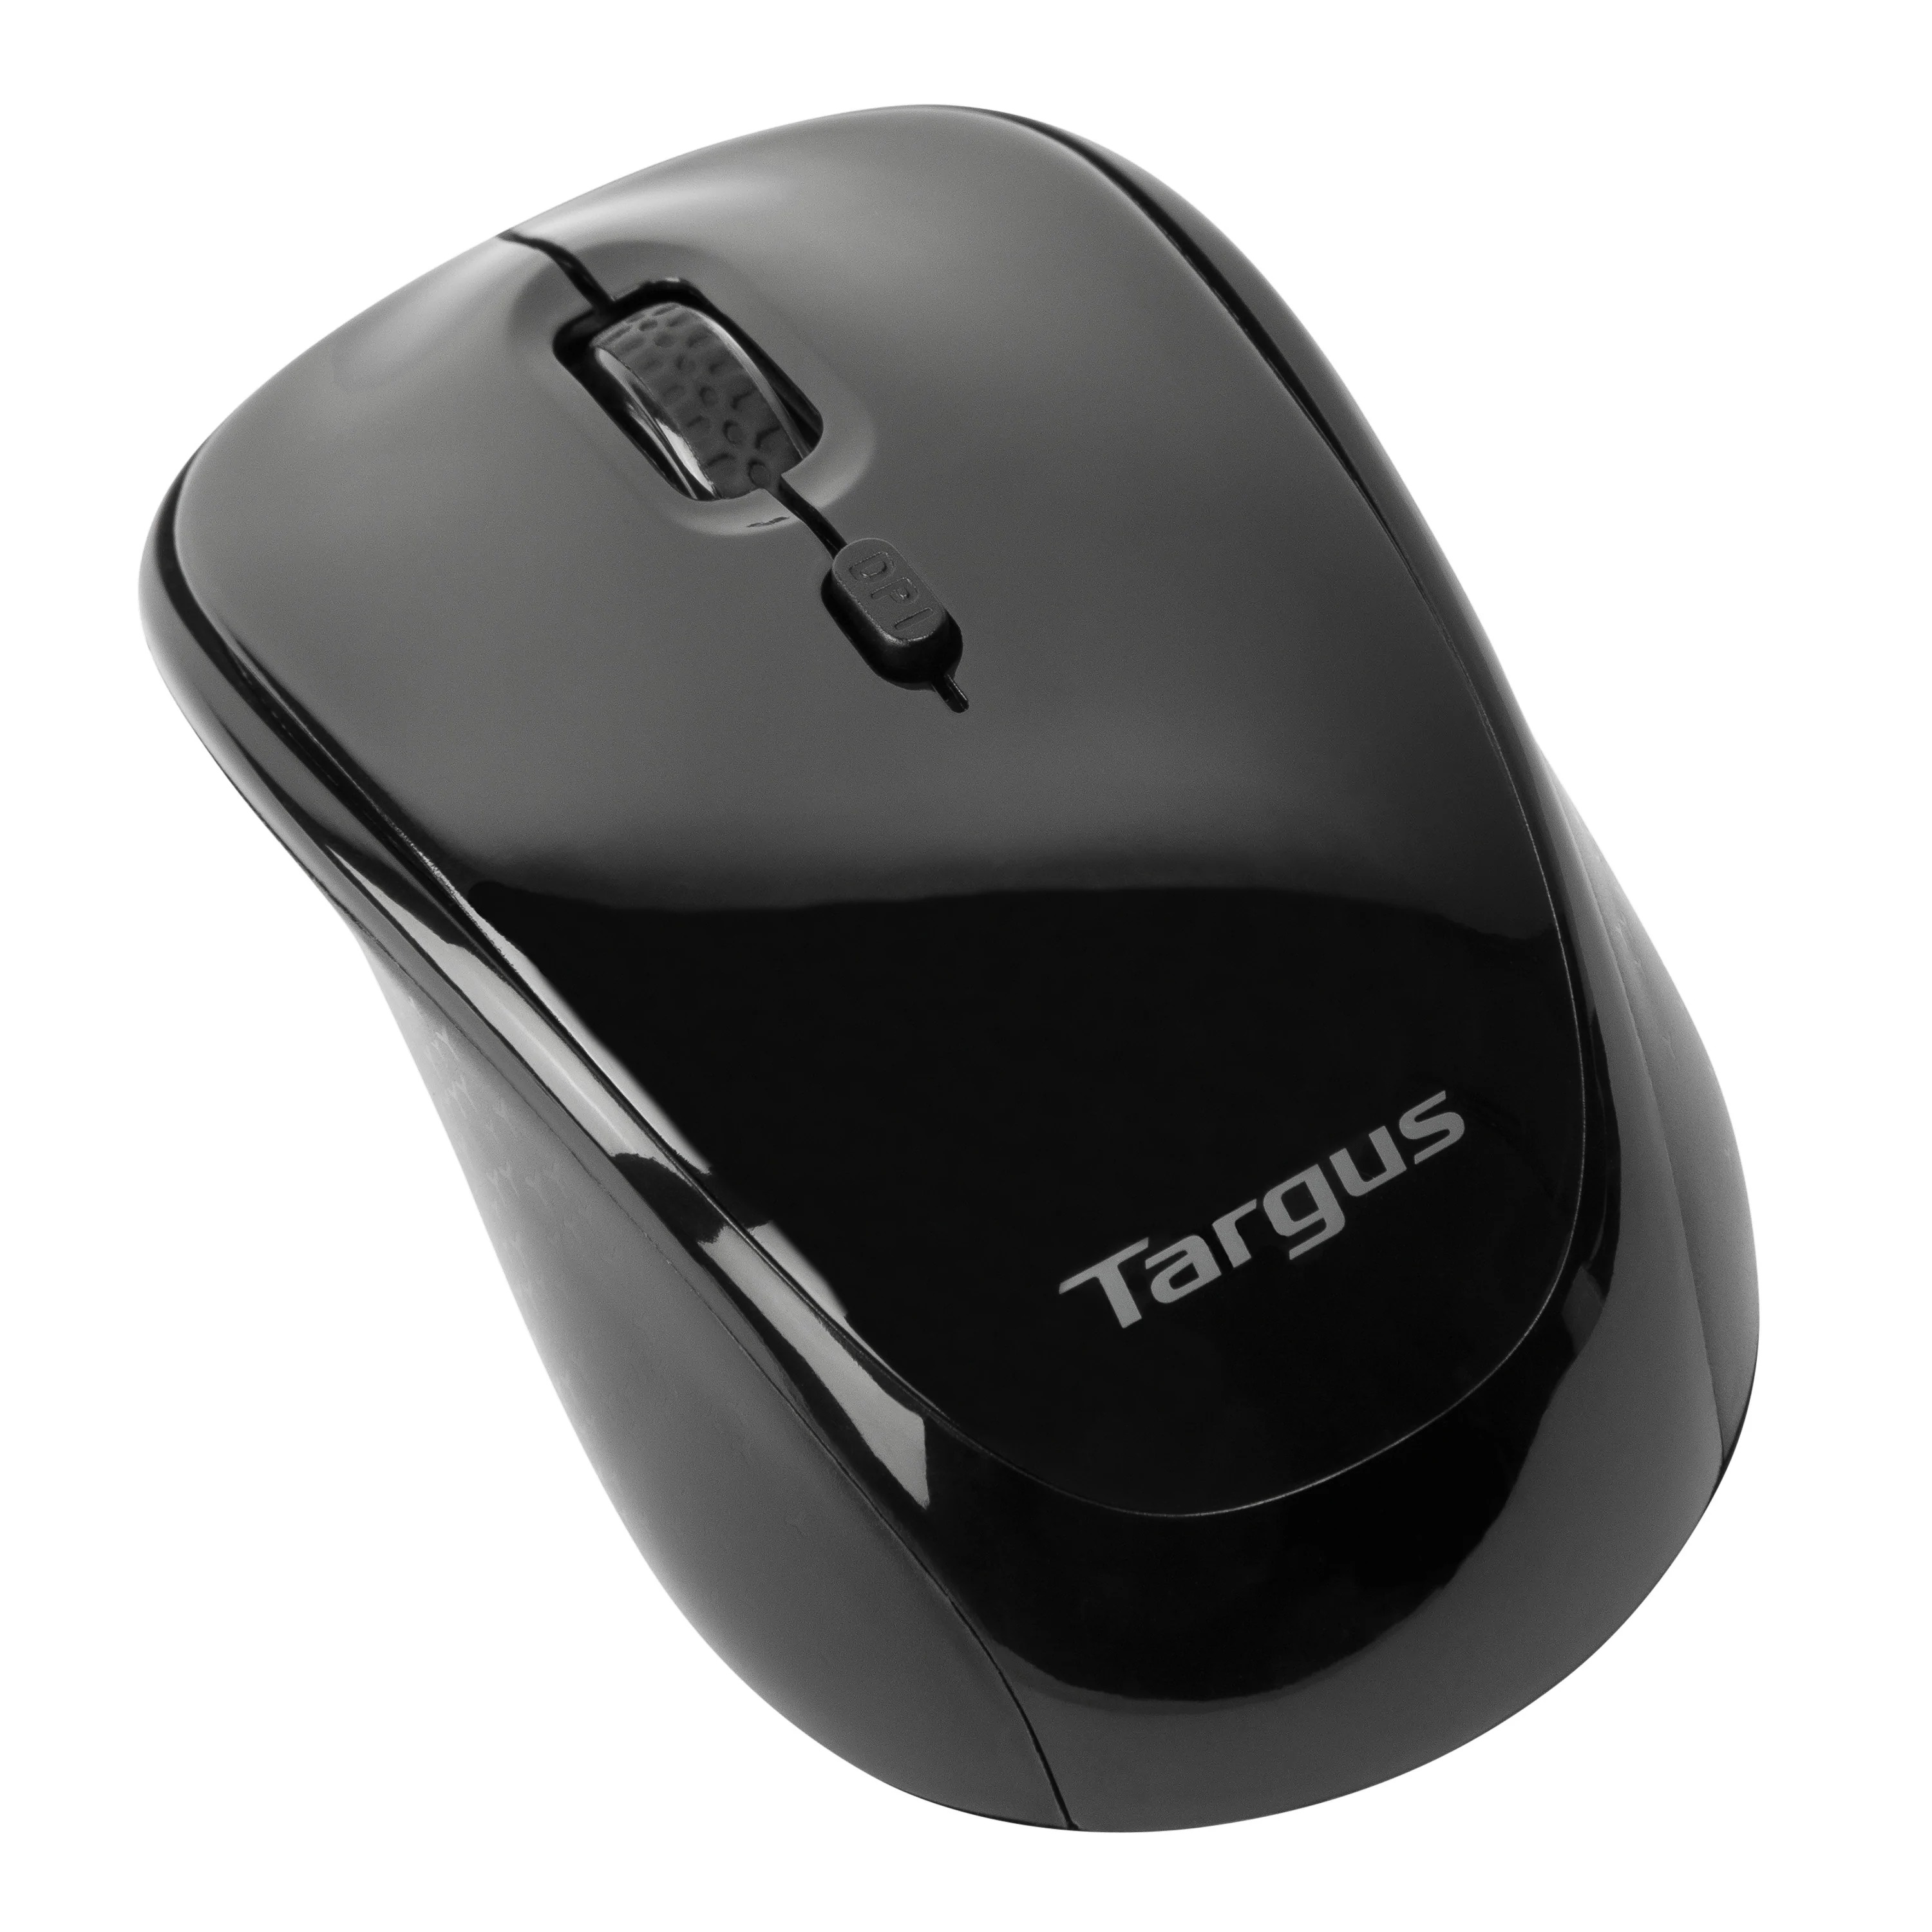 Chuột không dây Targus W620 Black - USB 2.4GHz, thiết kế thuận 2 tay, phù hợp PC/ Laptop - Hàng chính hãng